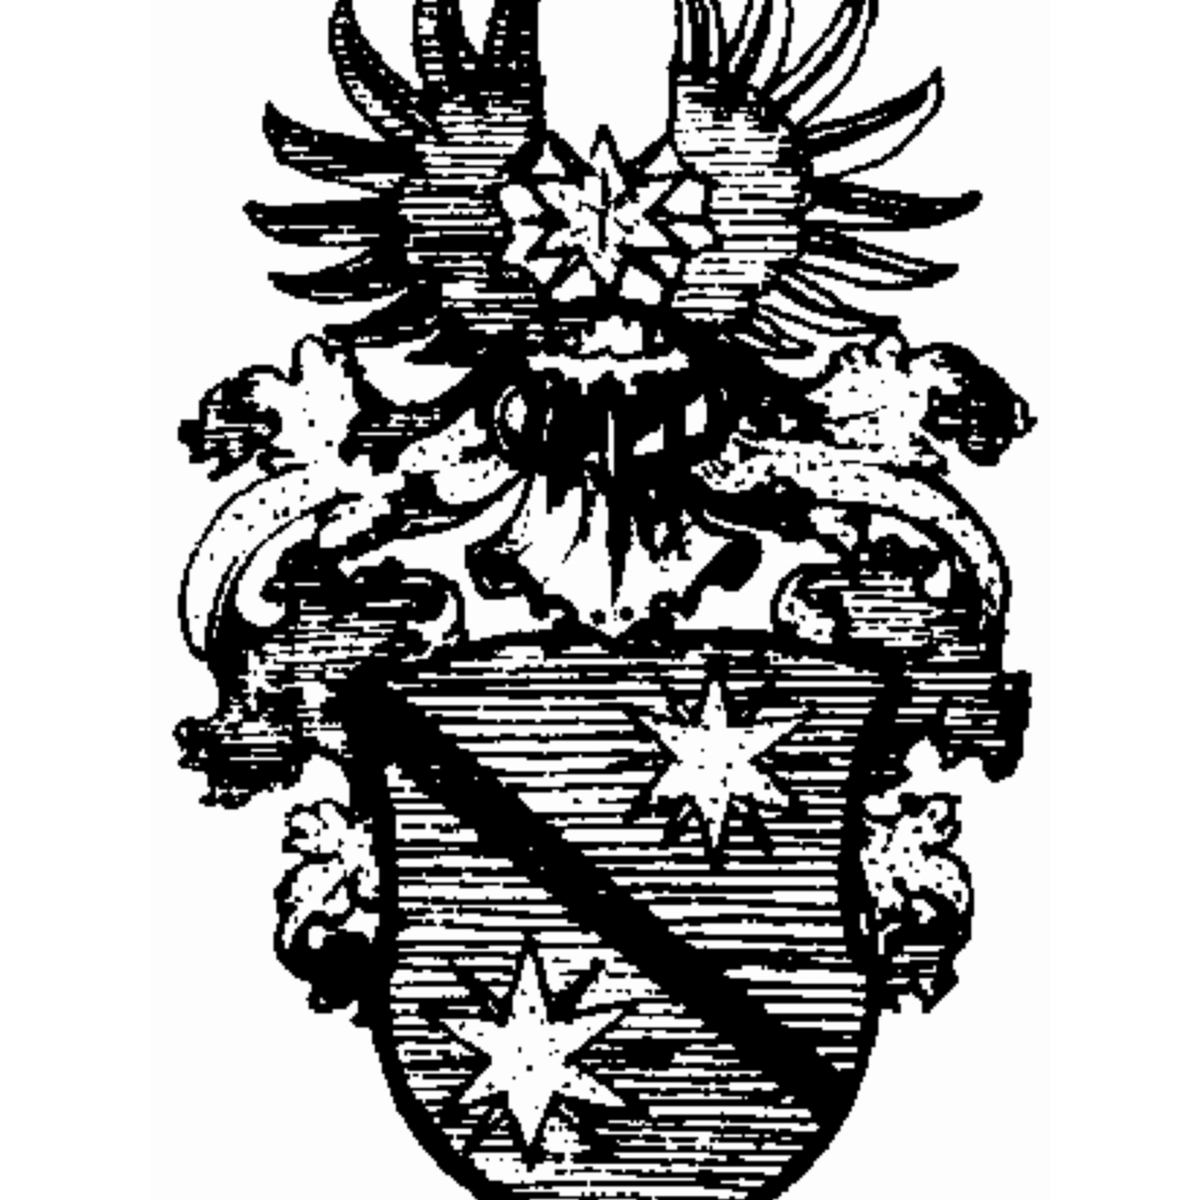 Wappen der Familie Taschenmacher